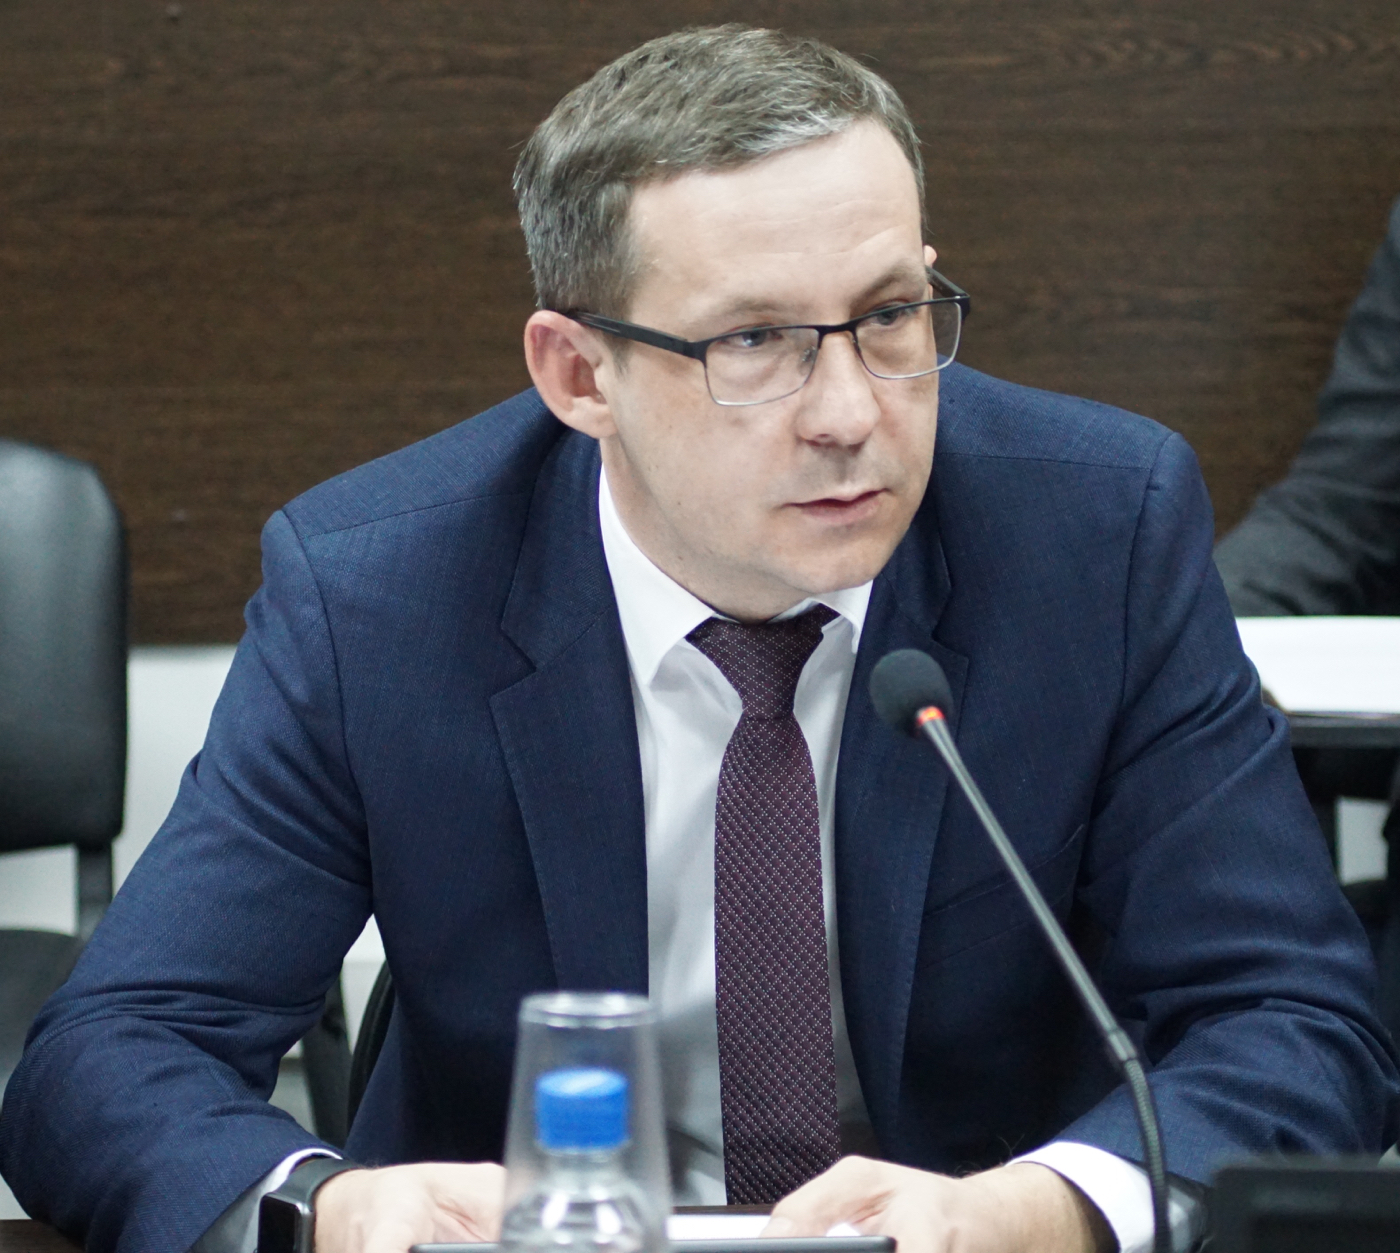 Лебедев Вячеслав Петрович — директор управления по работе с партнерами Северо-Западного банка Сбербанка 